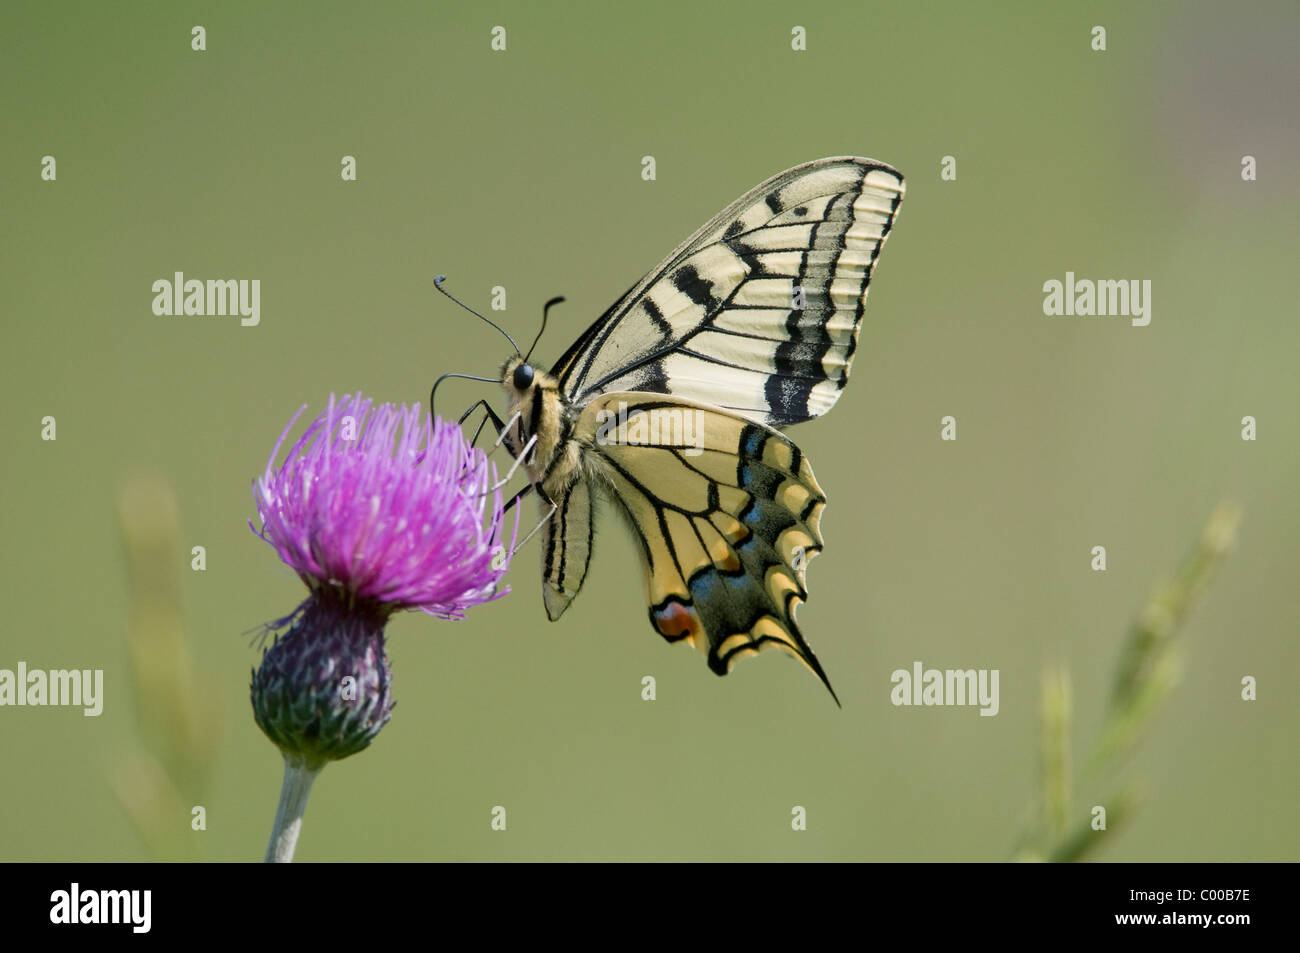 Schwalbenschwanz, Auf Einer Distel, Papilio Machaon, gemeinsame gelbe Schwalbenschwanz auf Distel, Deutschland, Deutschland Stockfoto